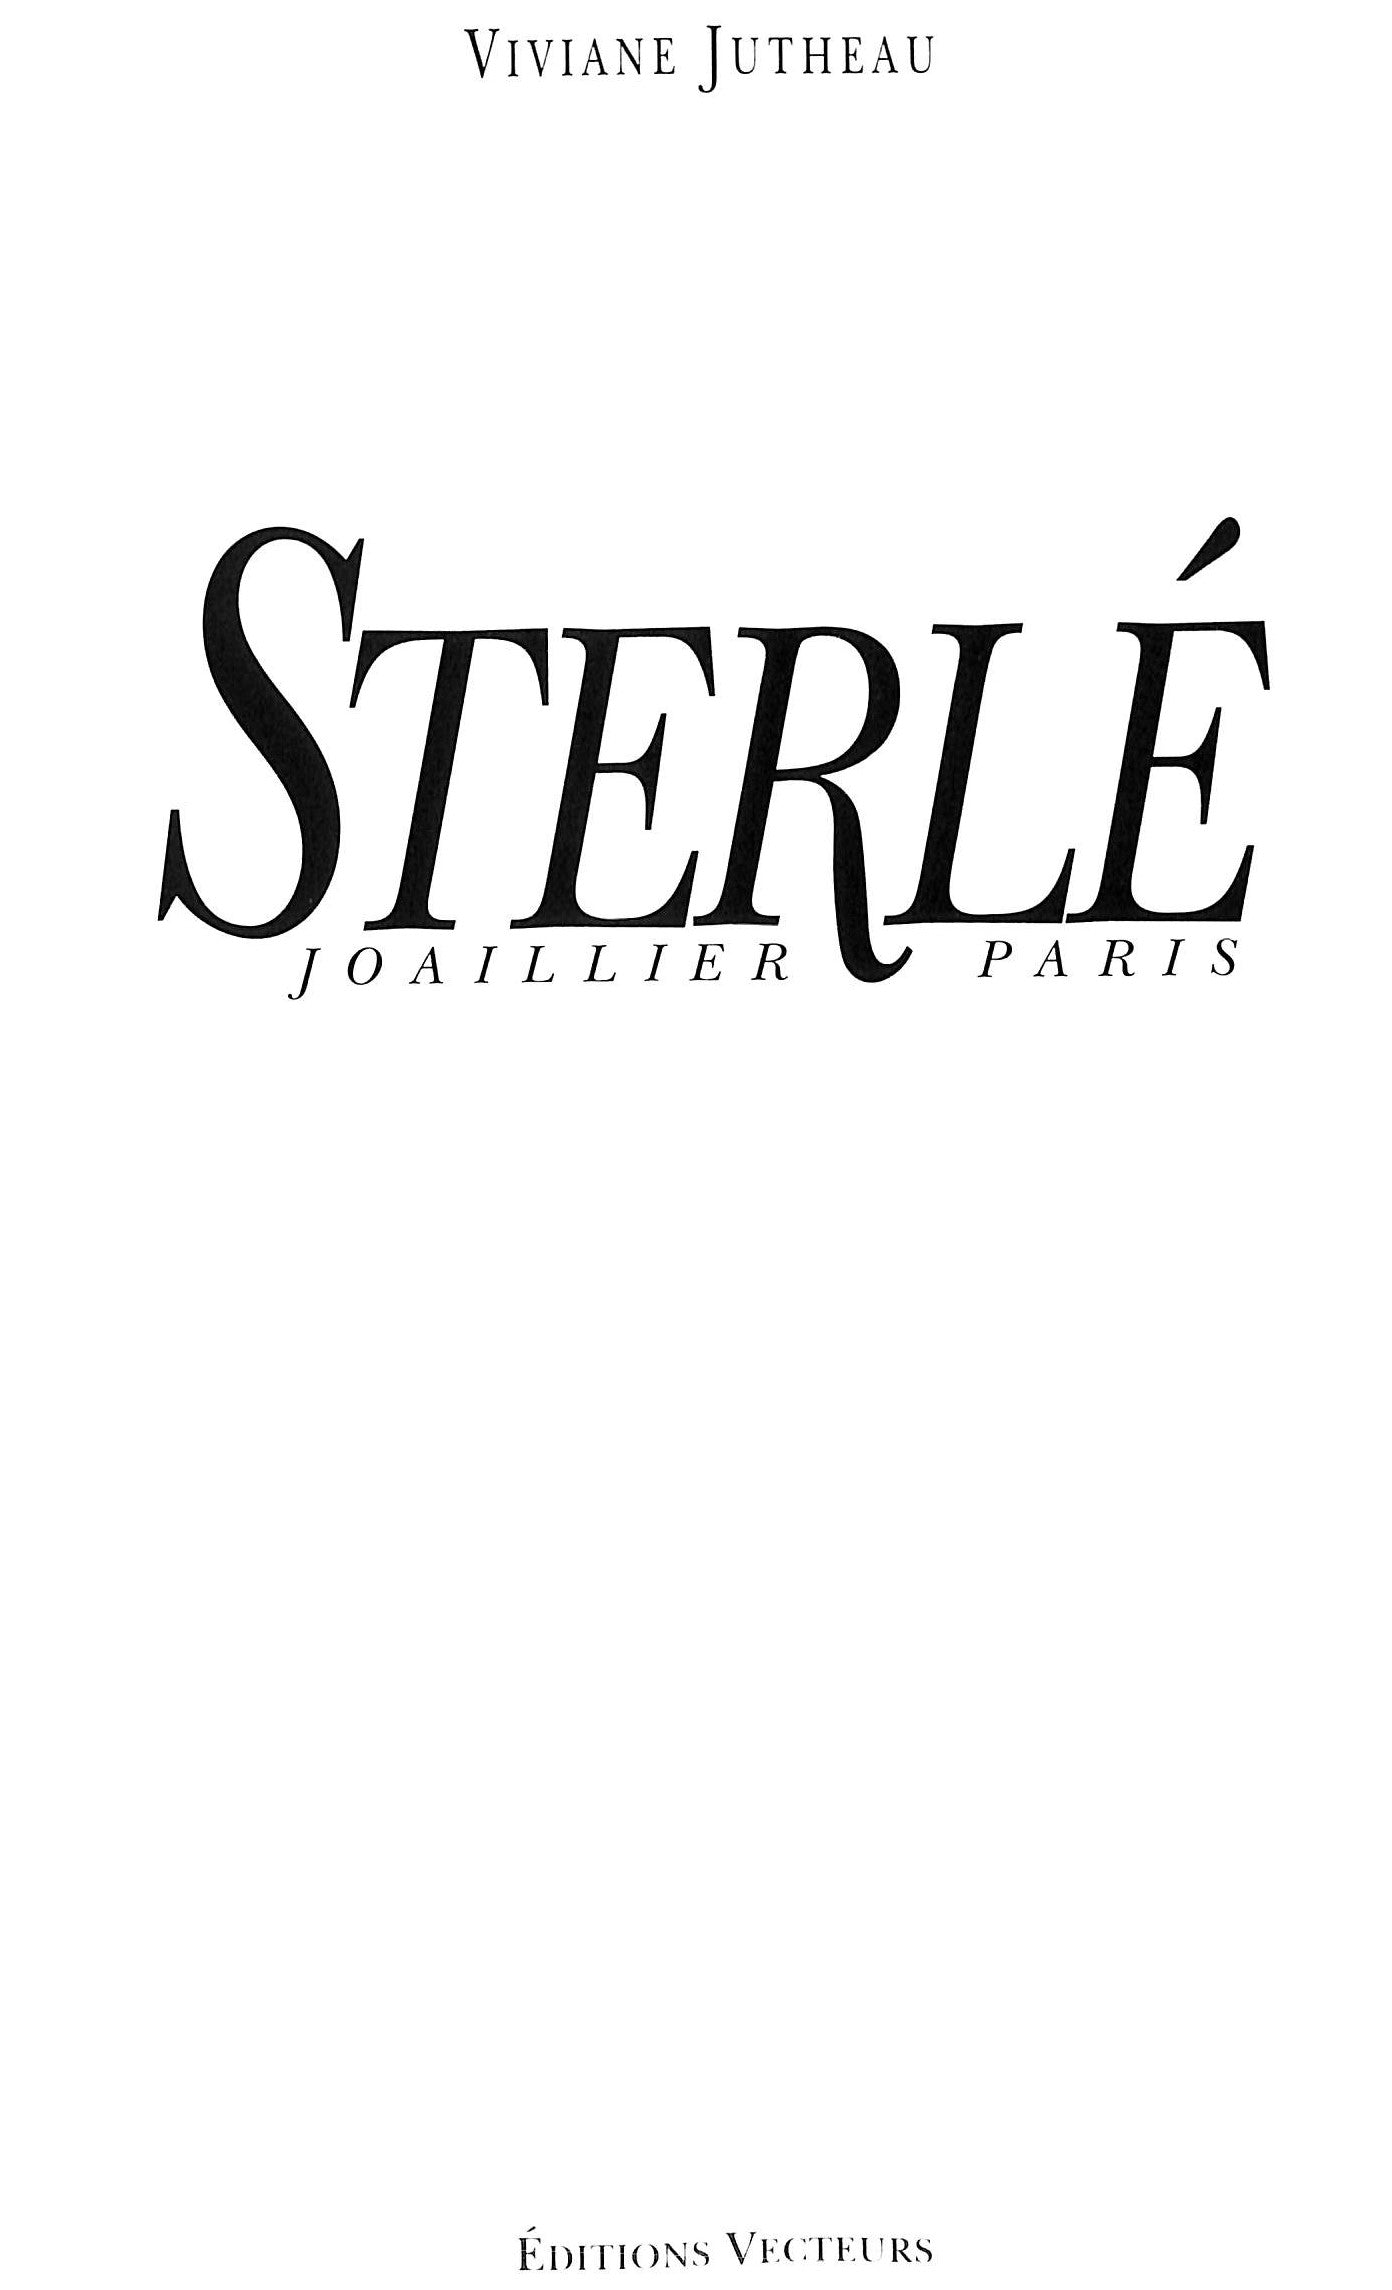 Sterle Joaillier Paris